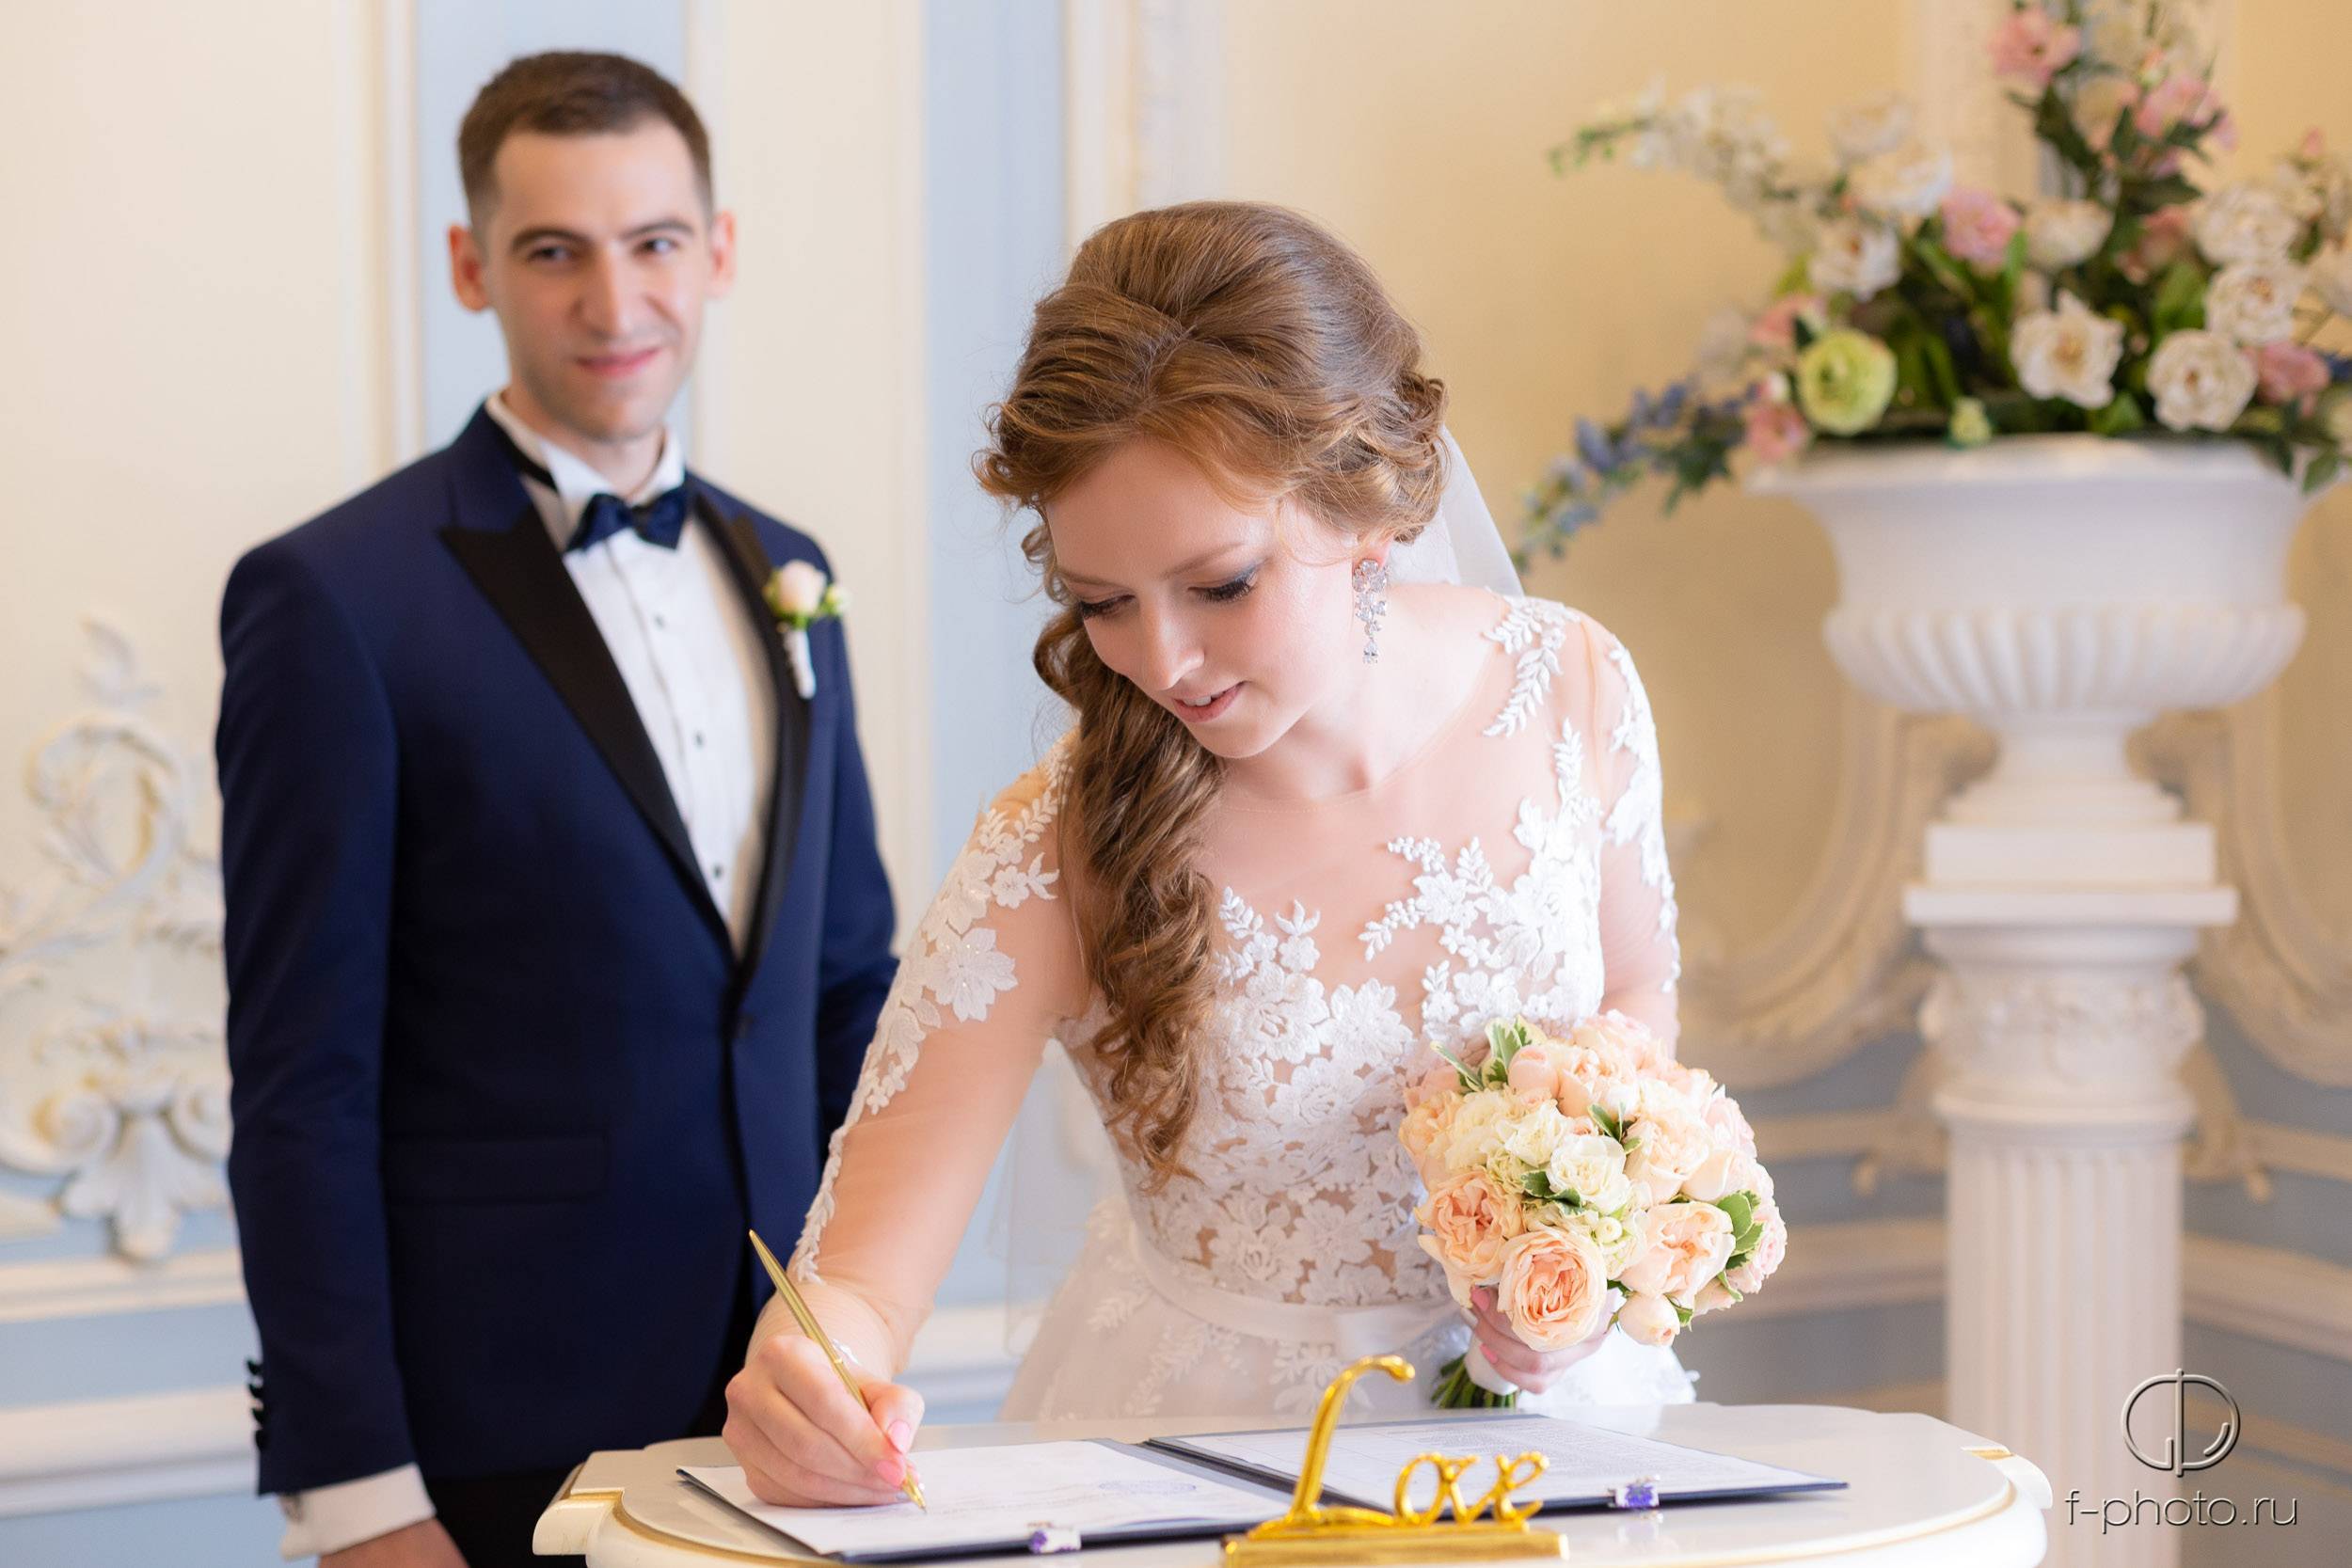 Организация выездной регистрации брака: советы и рекомендации